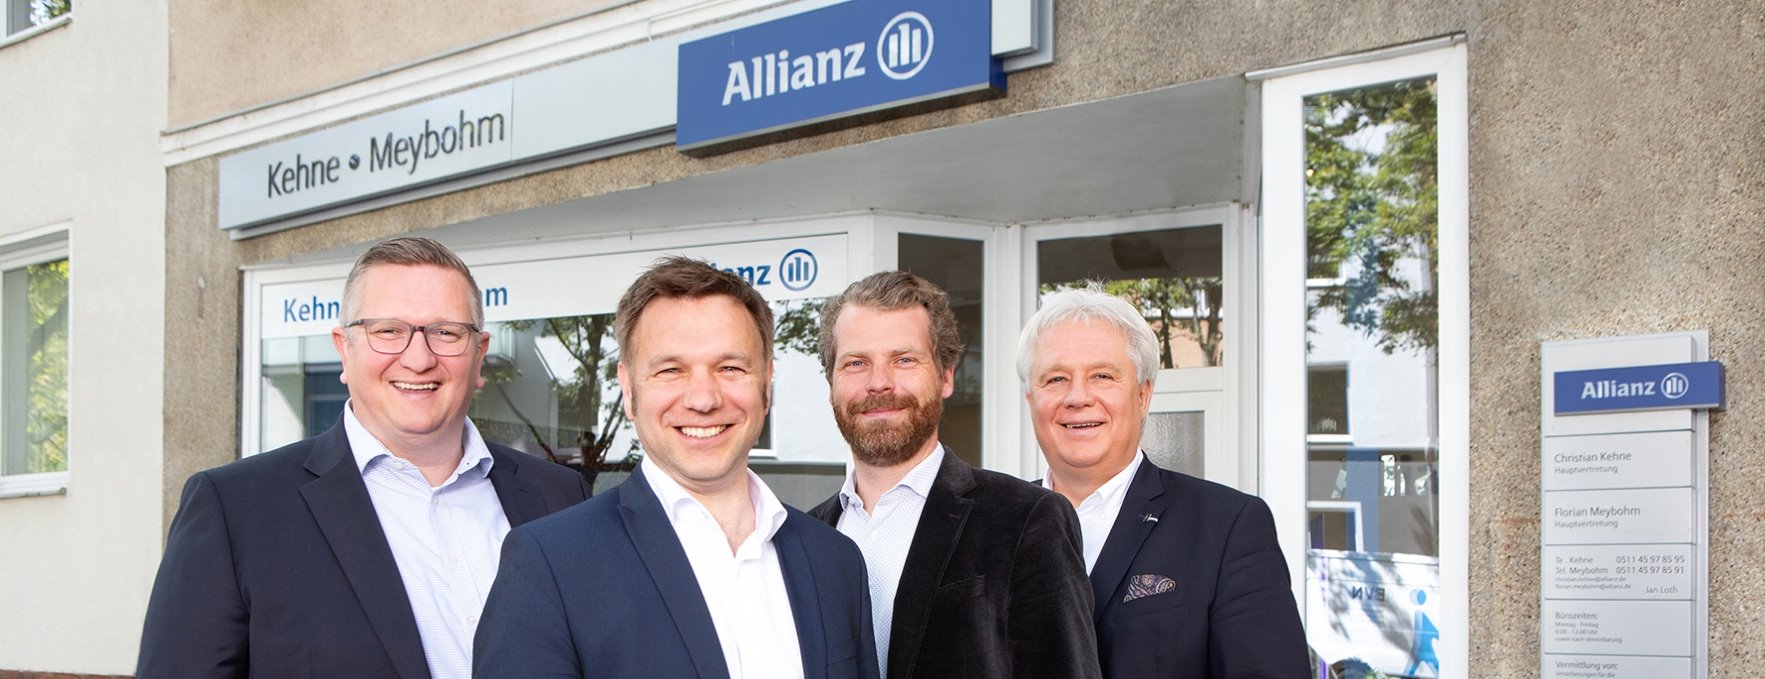 Allianz Versicherung Florian Meybohm Hannover - Unser Team